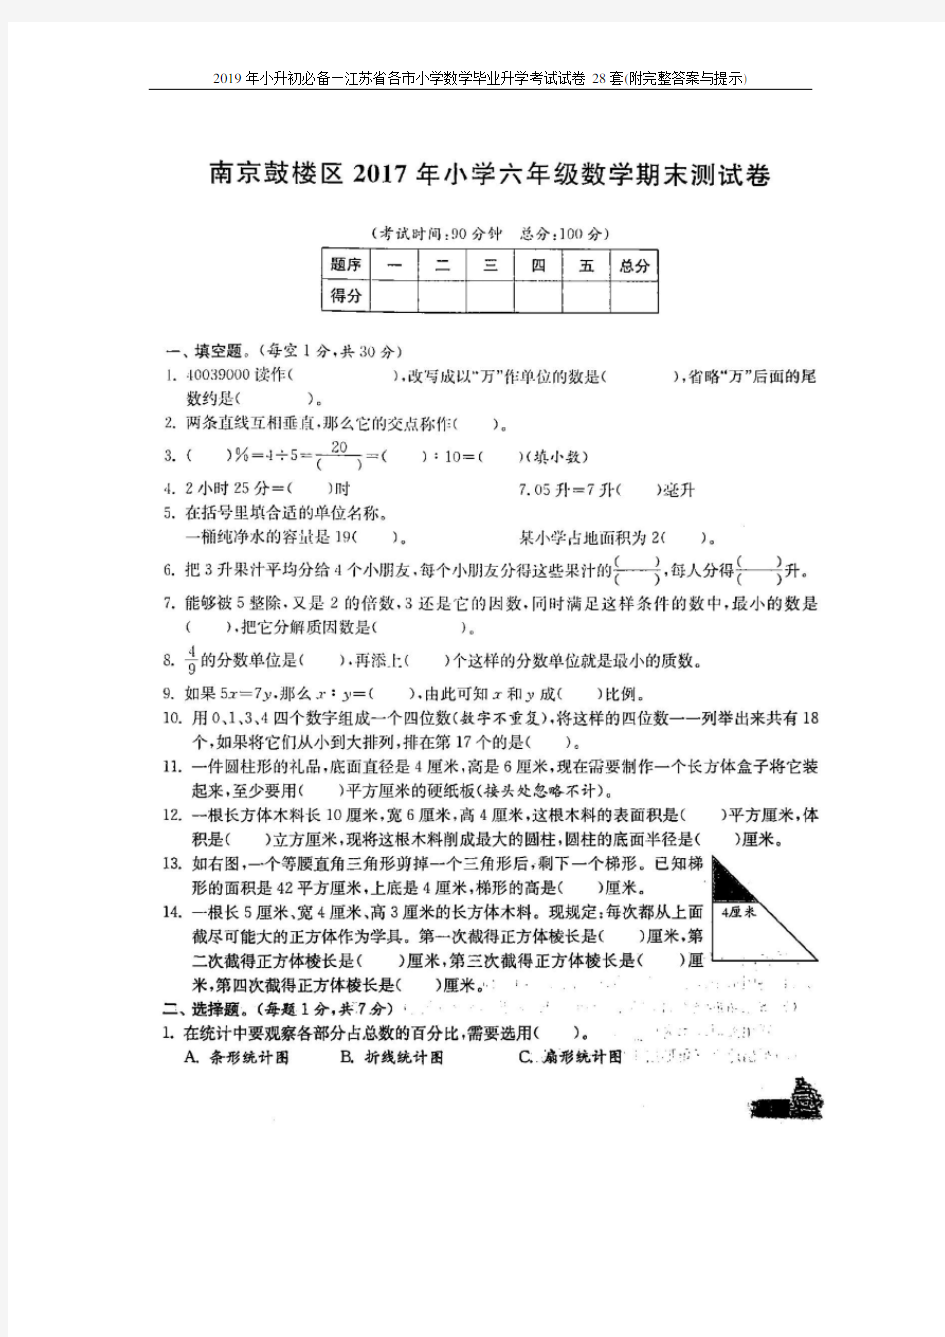 2019年小升初必备—江苏省各市小学数学毕业升学考试试卷28套(附完整答案与提示)